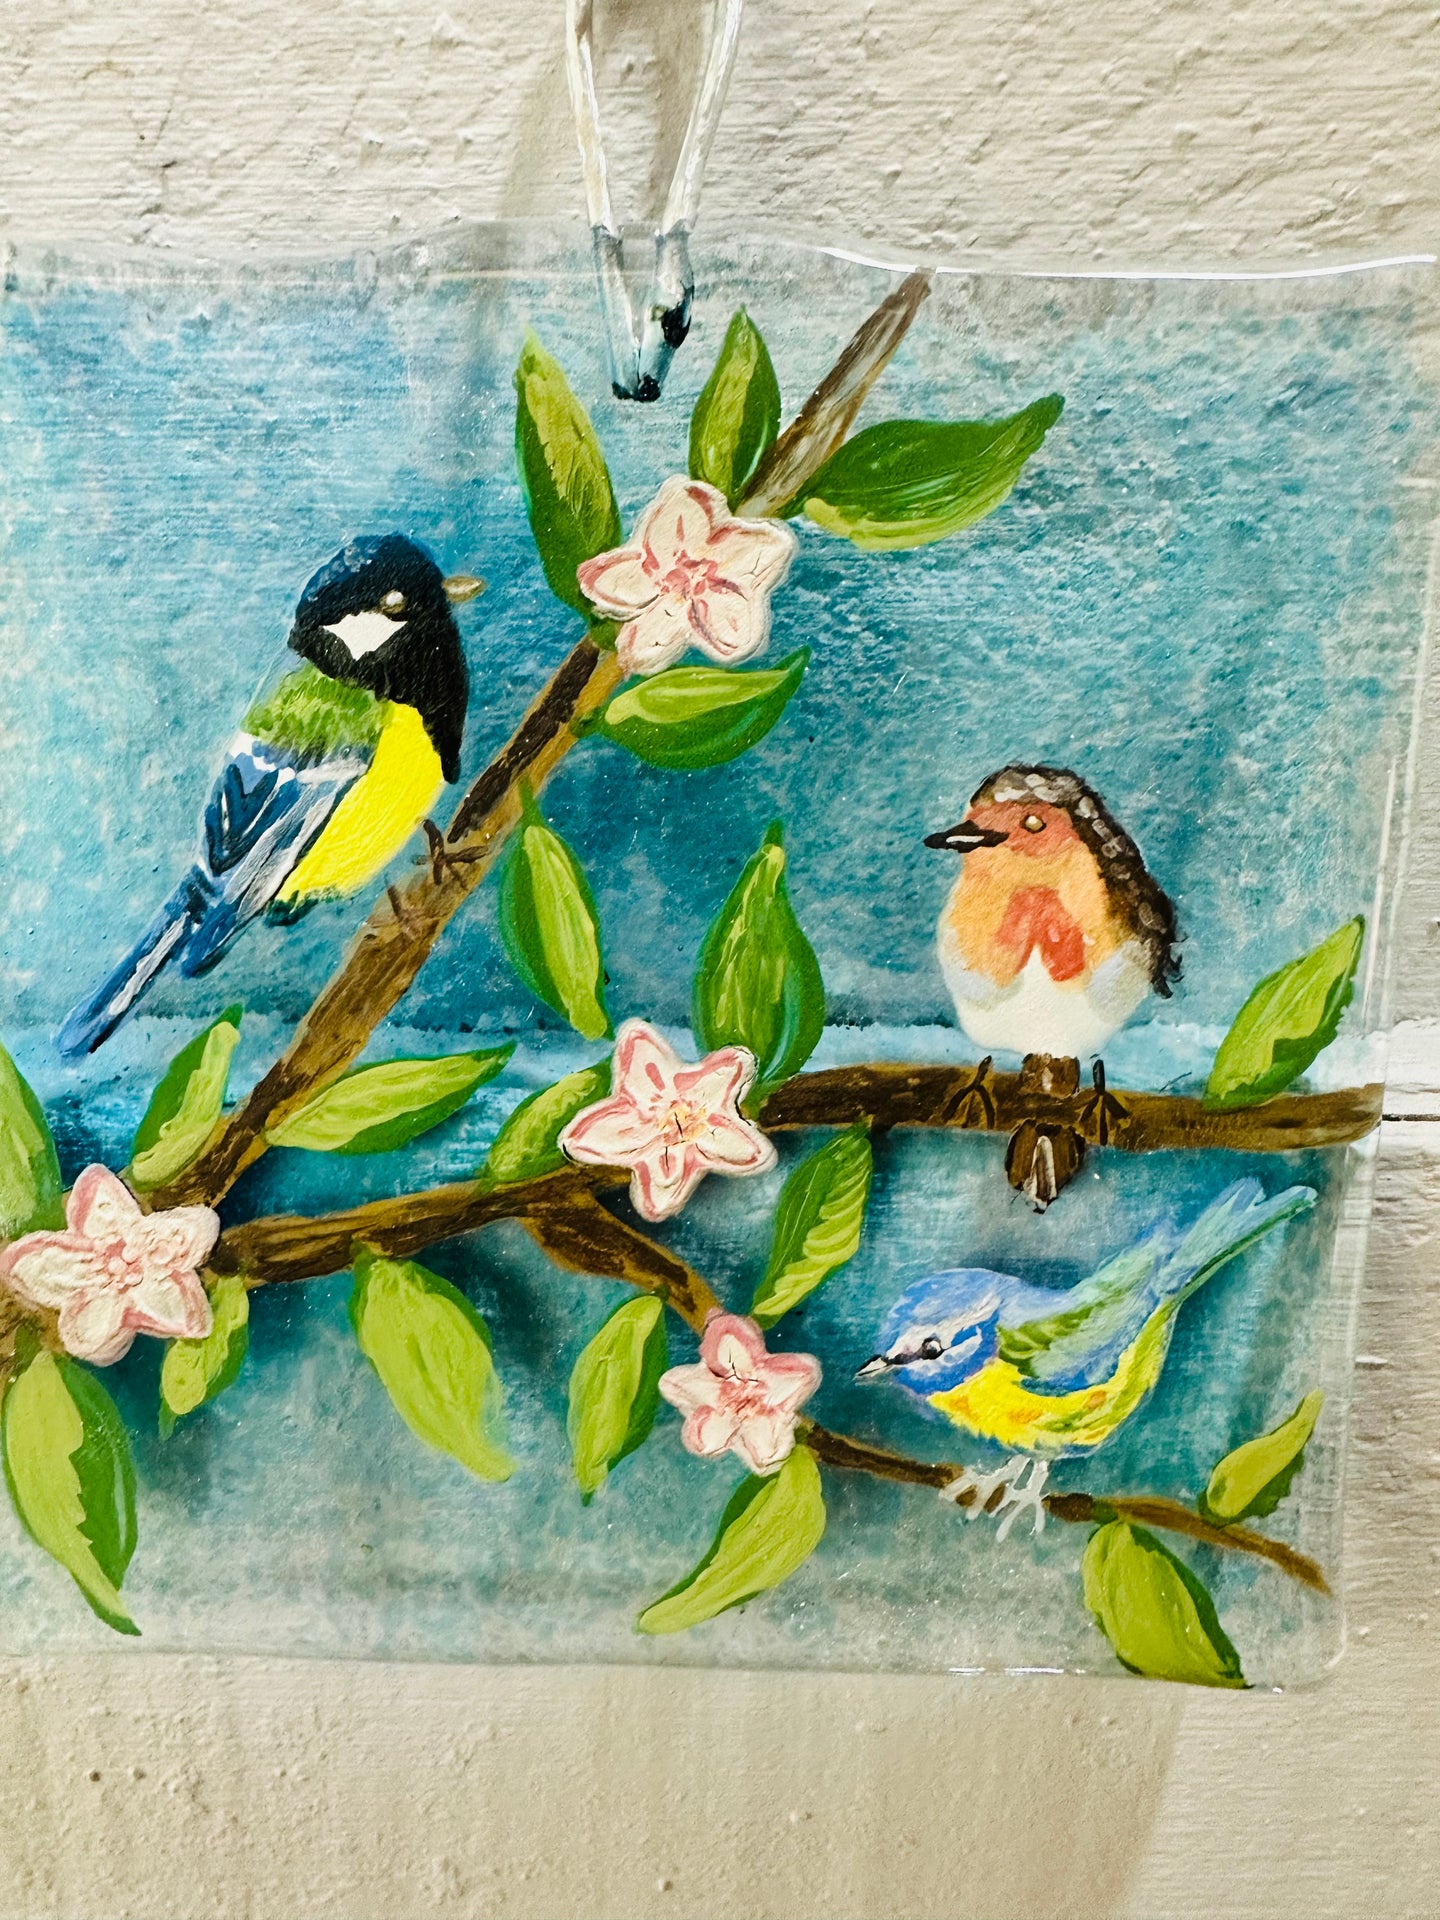 Trio of Song Birds Wall Hanger